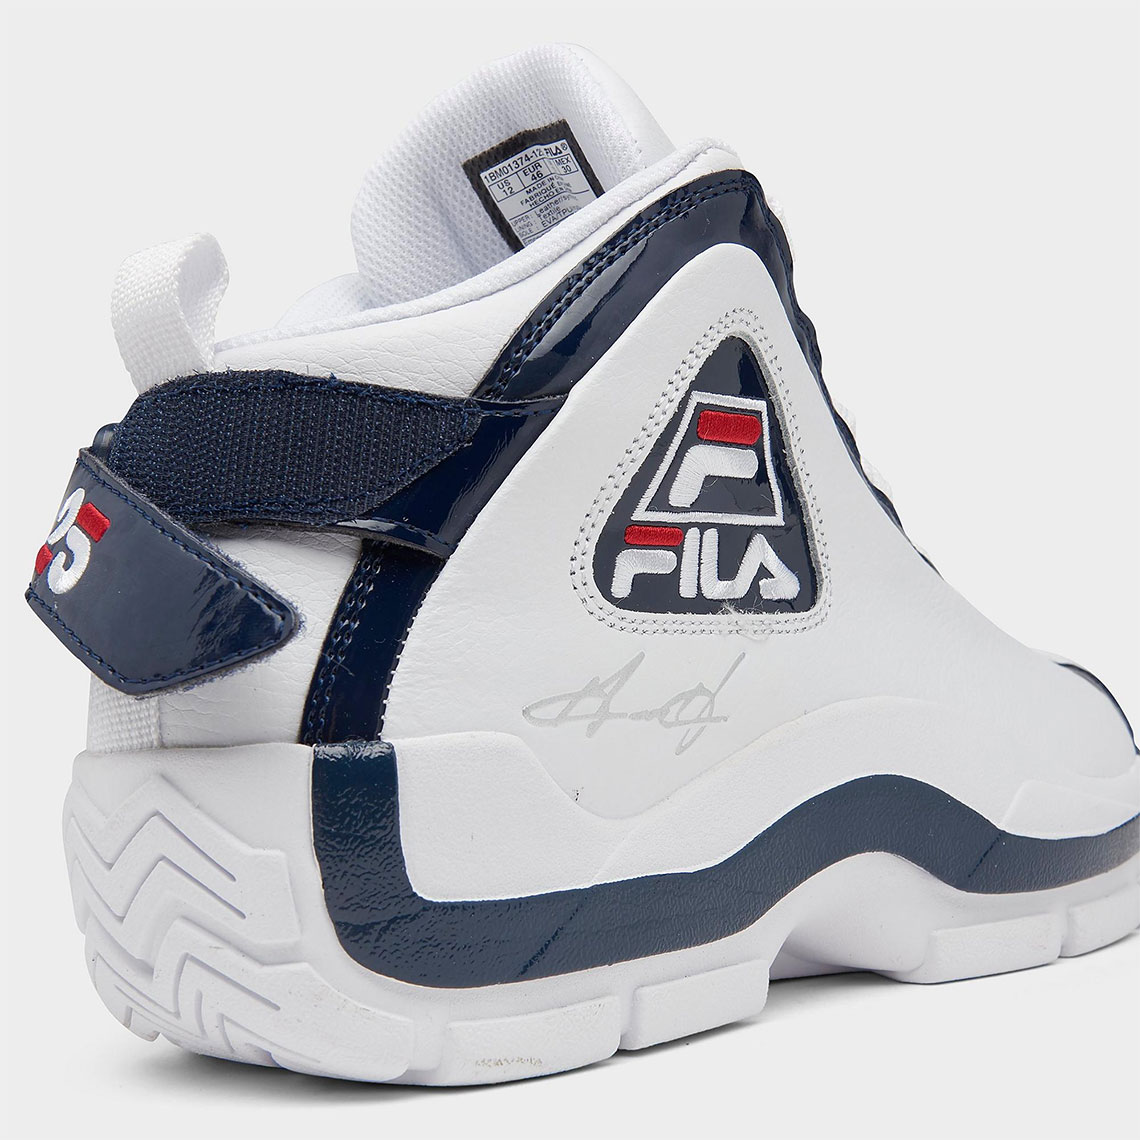 FILA Grant Hill 2 25th Anniversary Release Date | SneakerNews.com